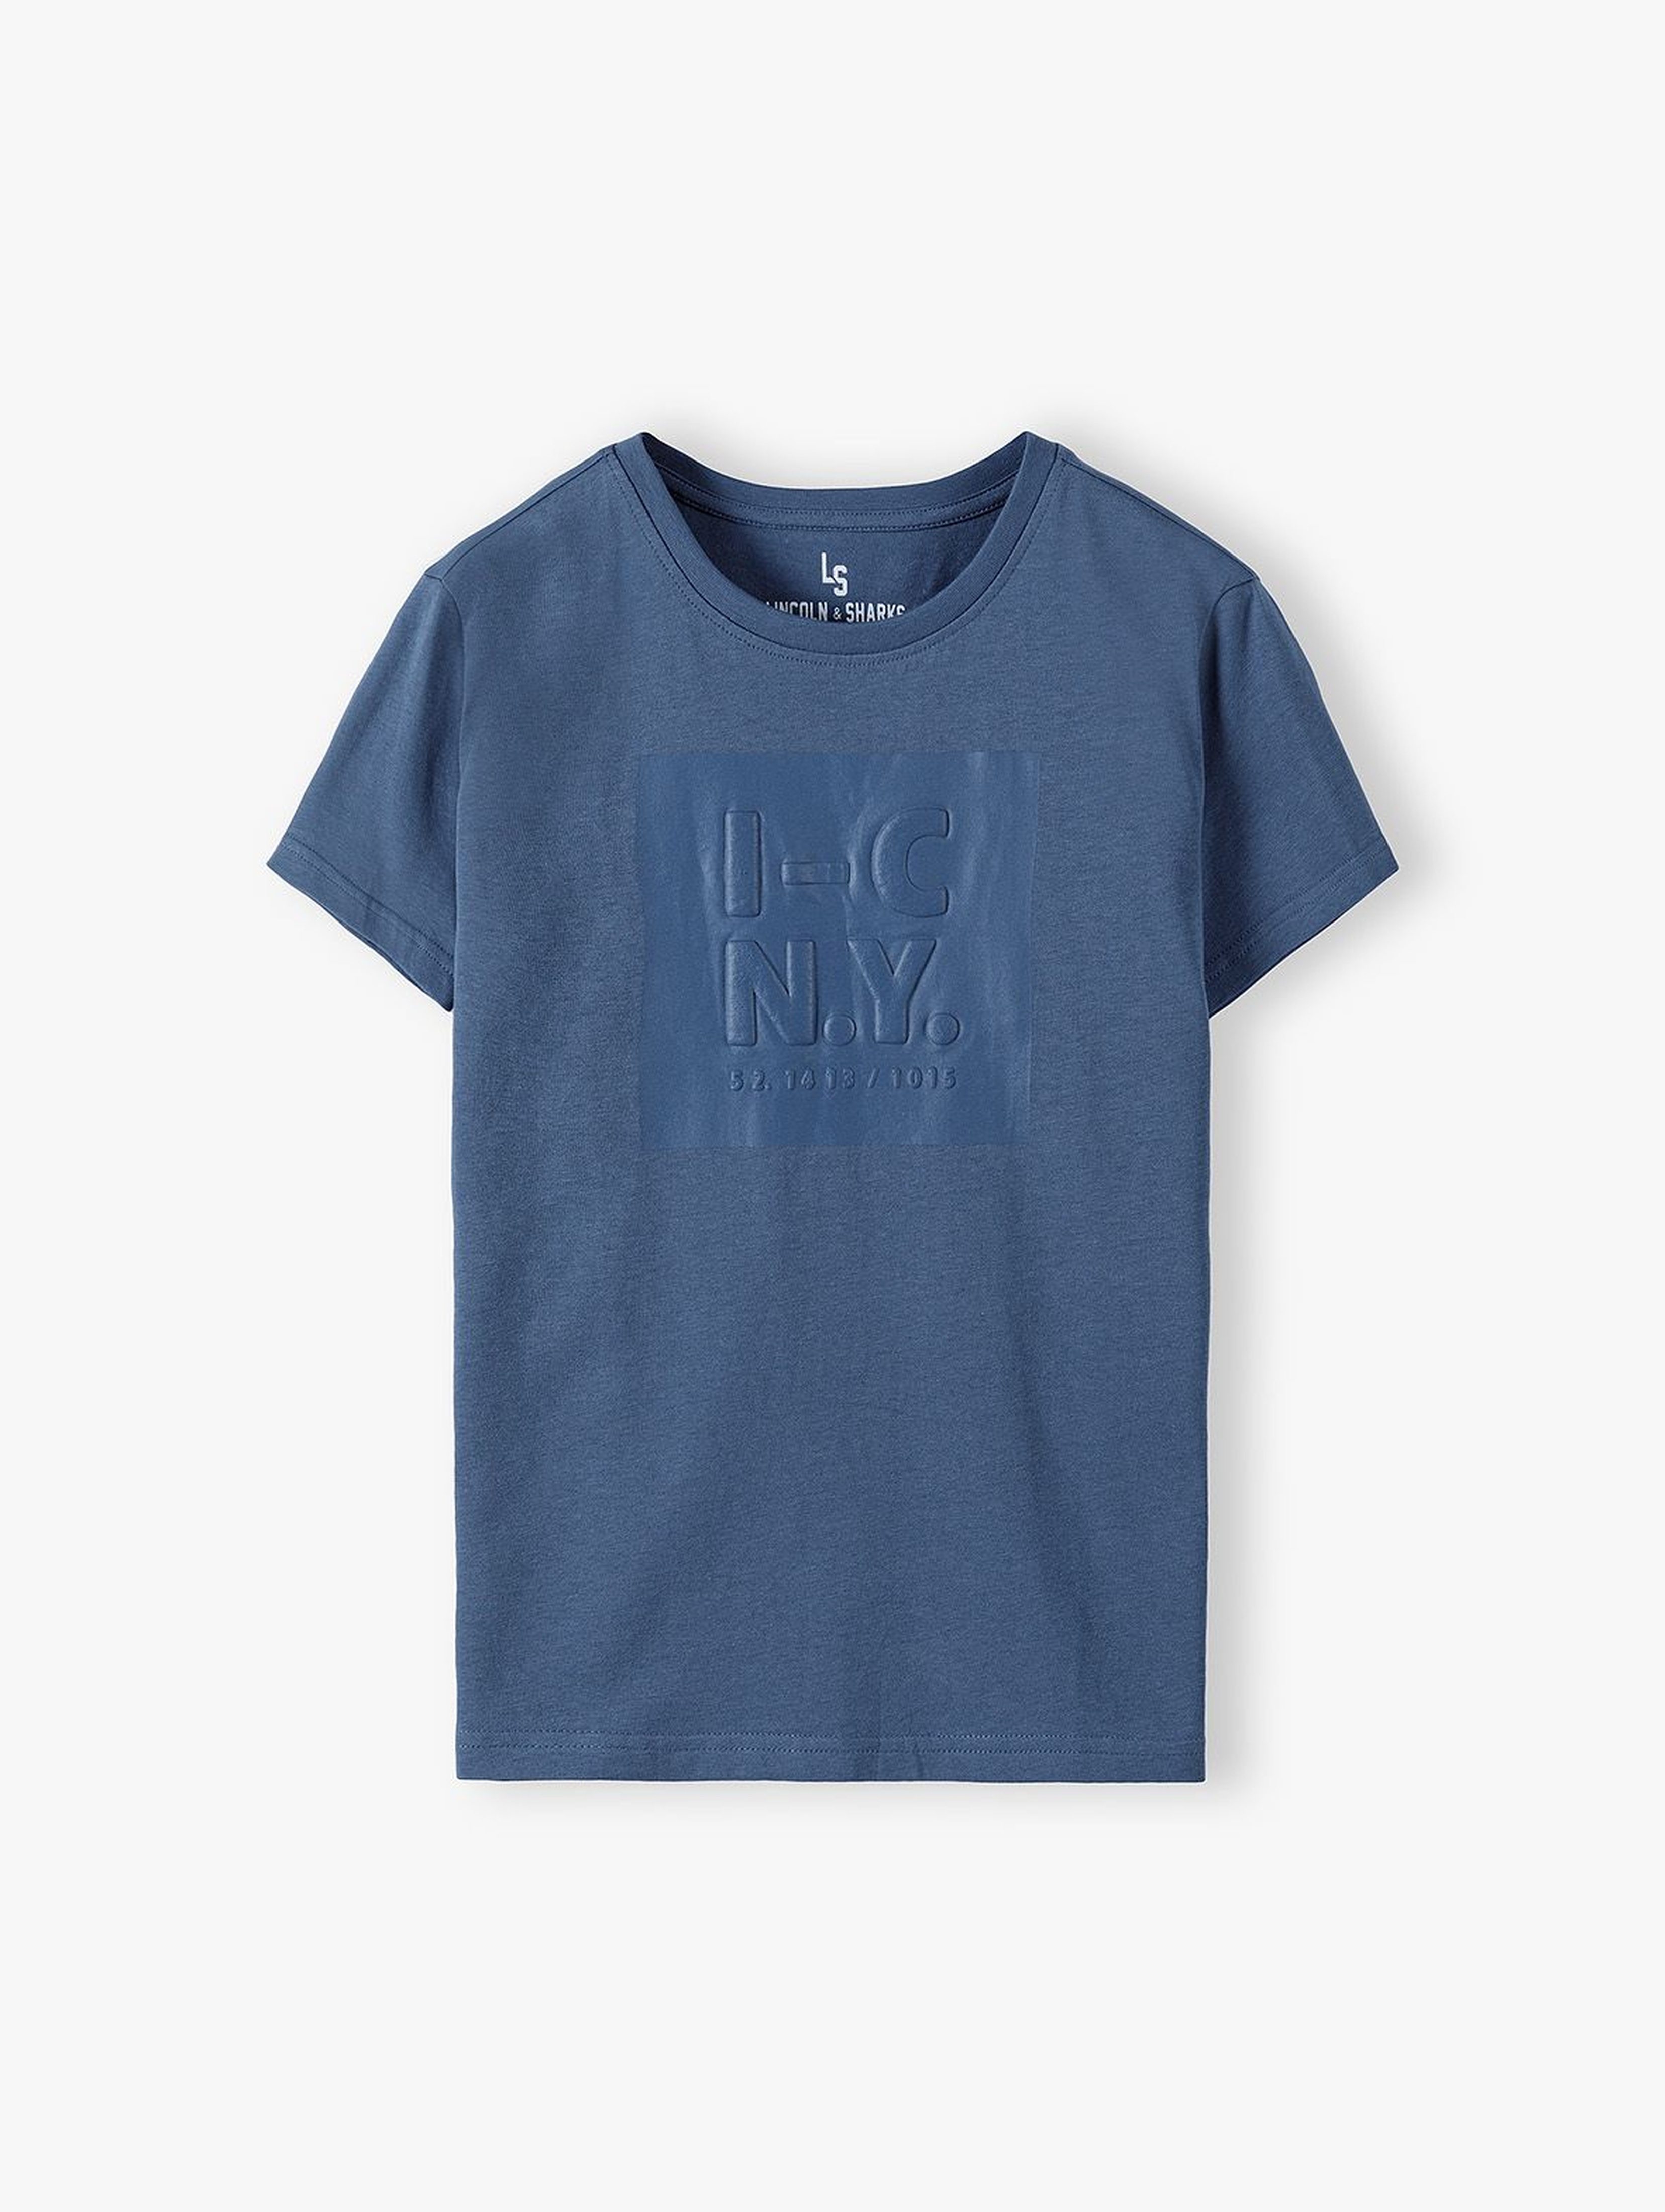 T-shirt chłopięcy z nadrukiem 3D- niebieski